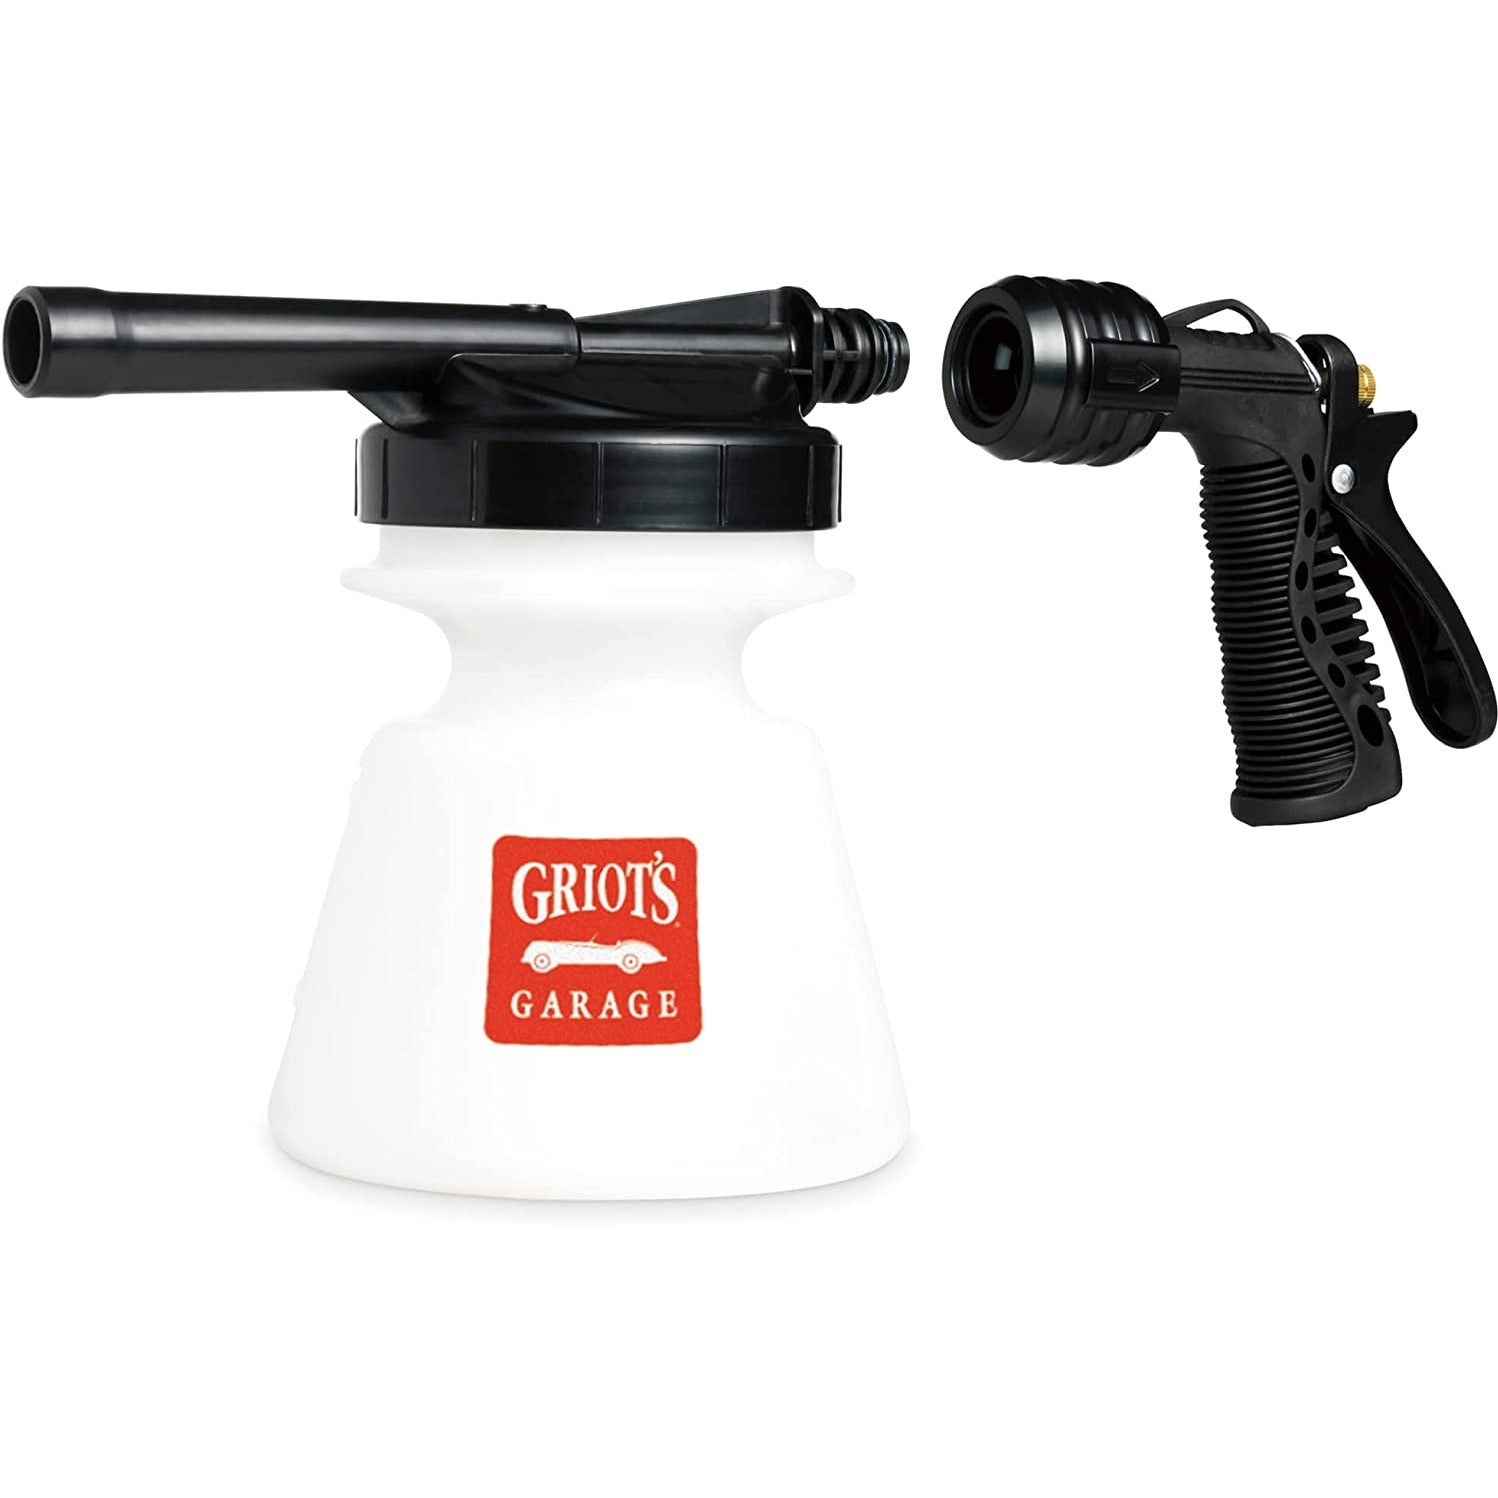 GRT 51140 Griot's Garage Brilliant Finish Foaming Gun Sprayer